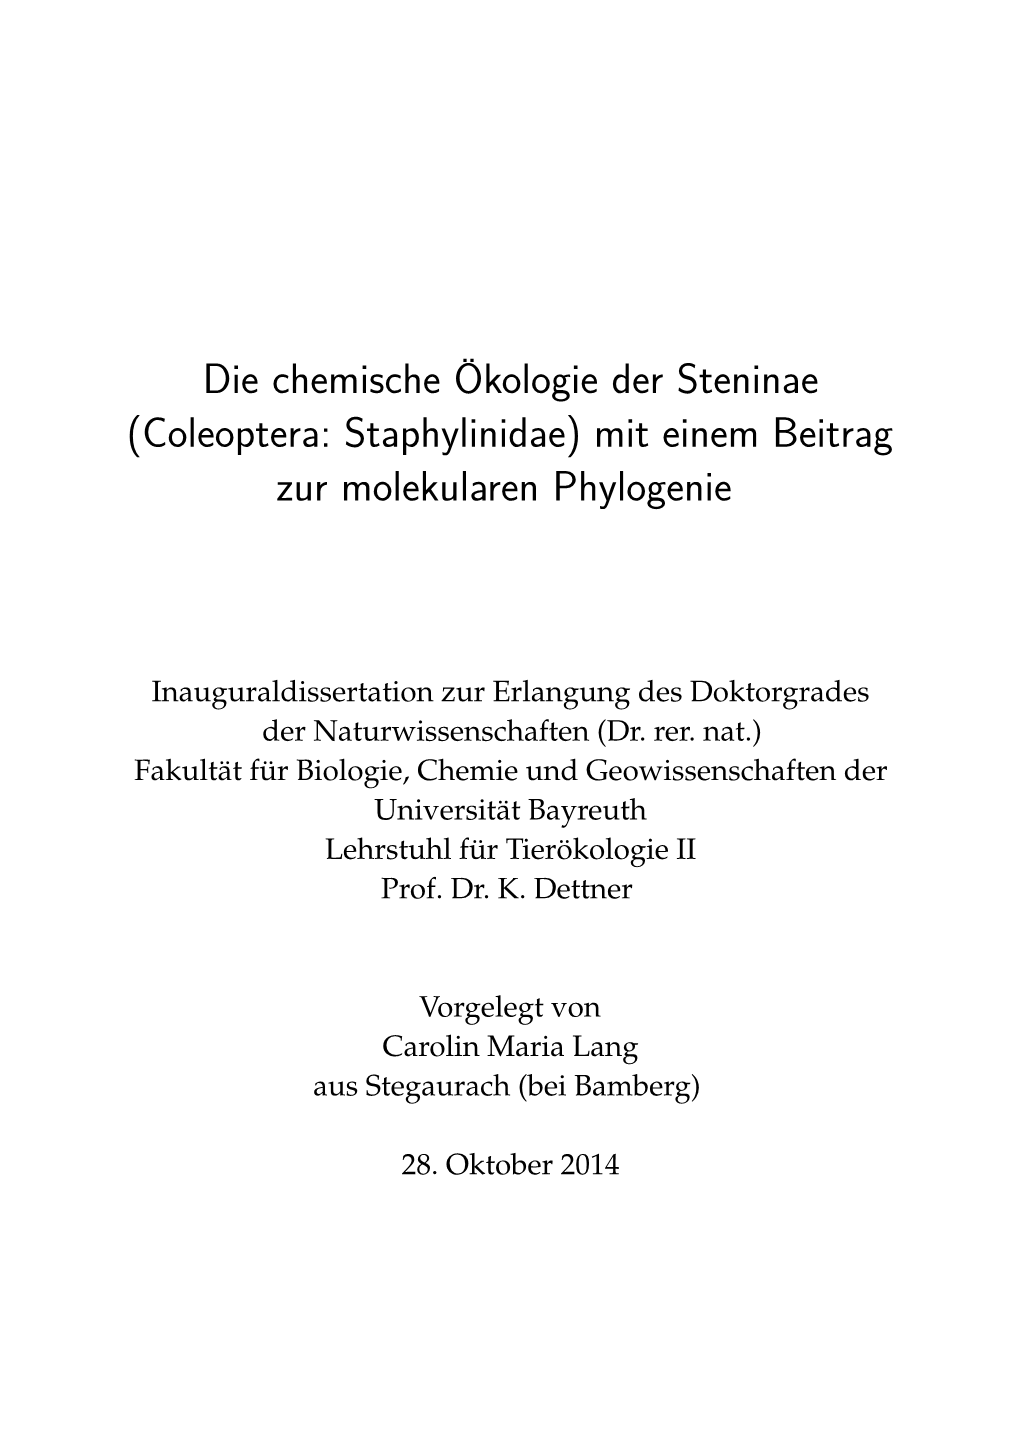 Die Chemische Ökologie Der Steninae (Coleoptera: Staphylinidae) Mit Einem Beitrag Zur Molekularen Phylogenie